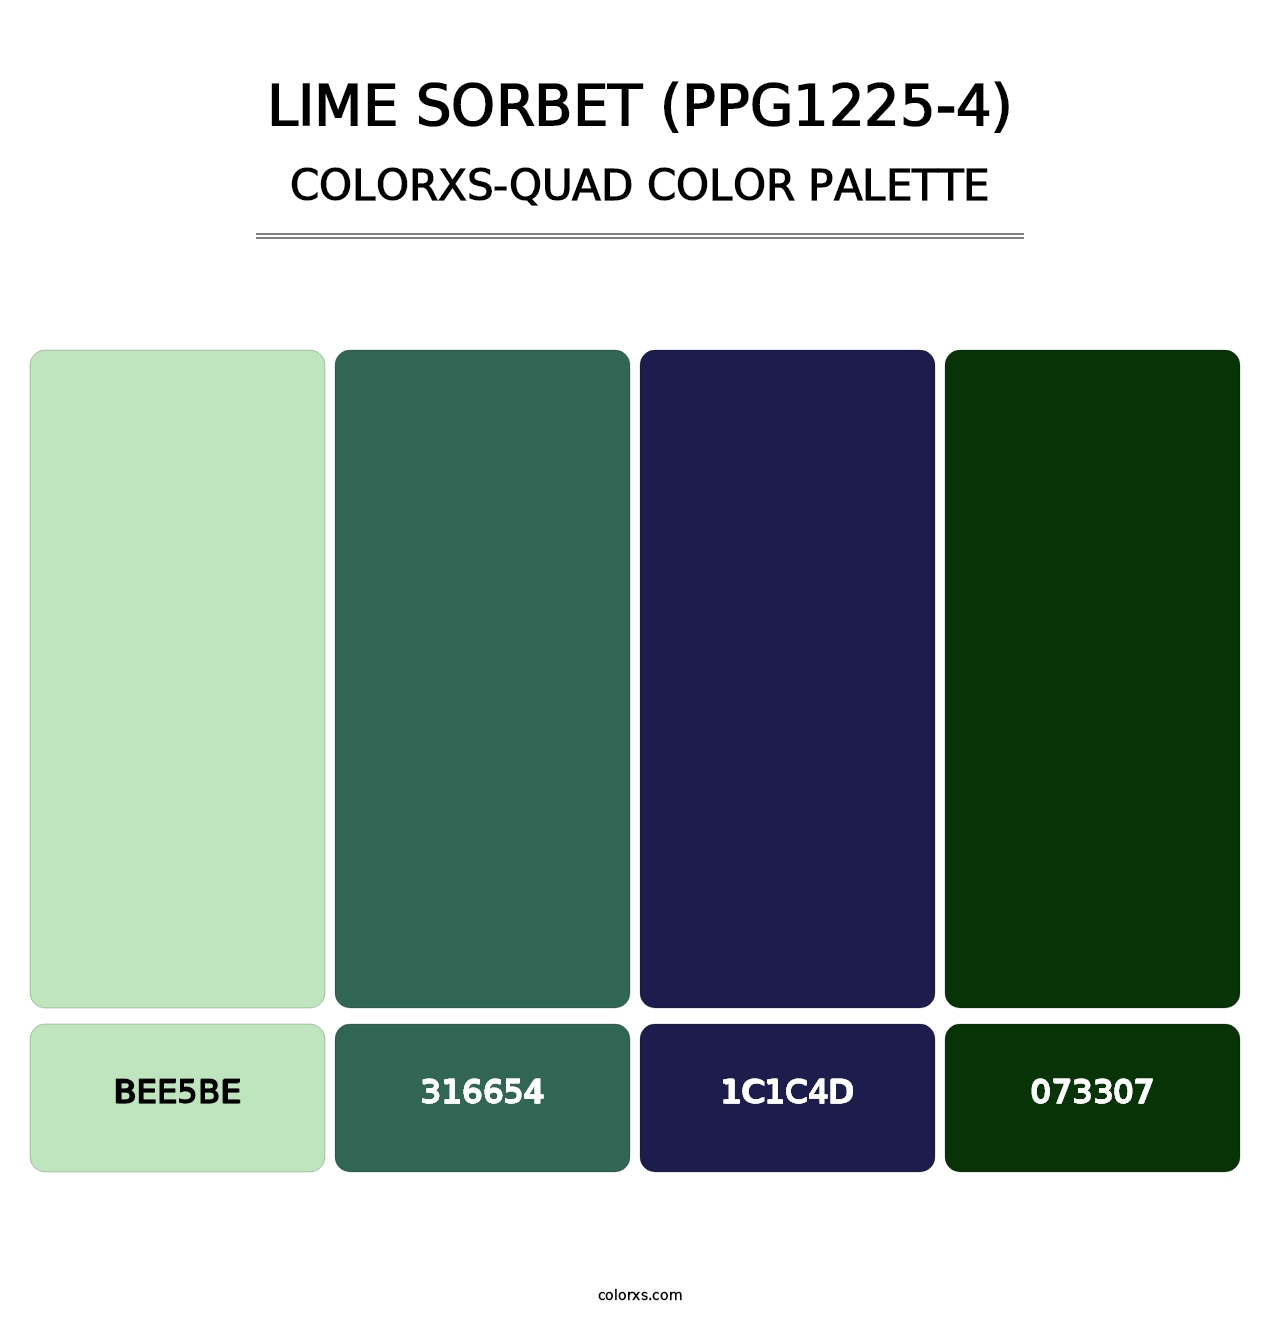 Lime Sorbet (PPG1225-4) - Colorxs Quad Palette